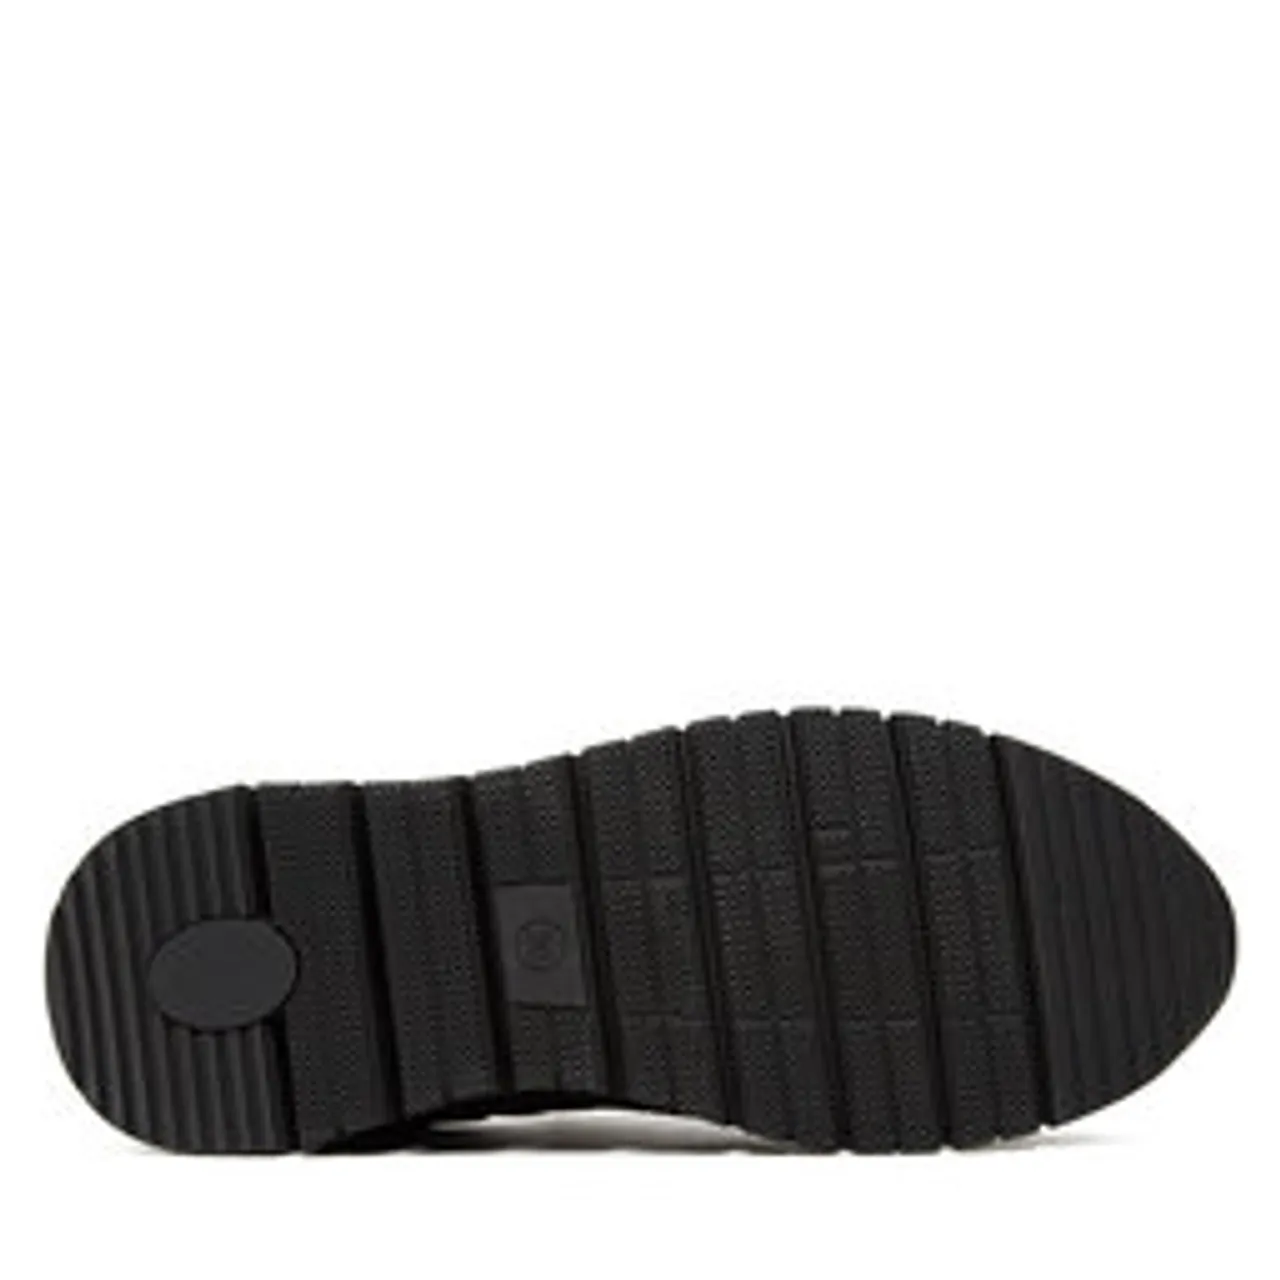 Sneakers Jana 8-23765-41 Black/Zebra 093